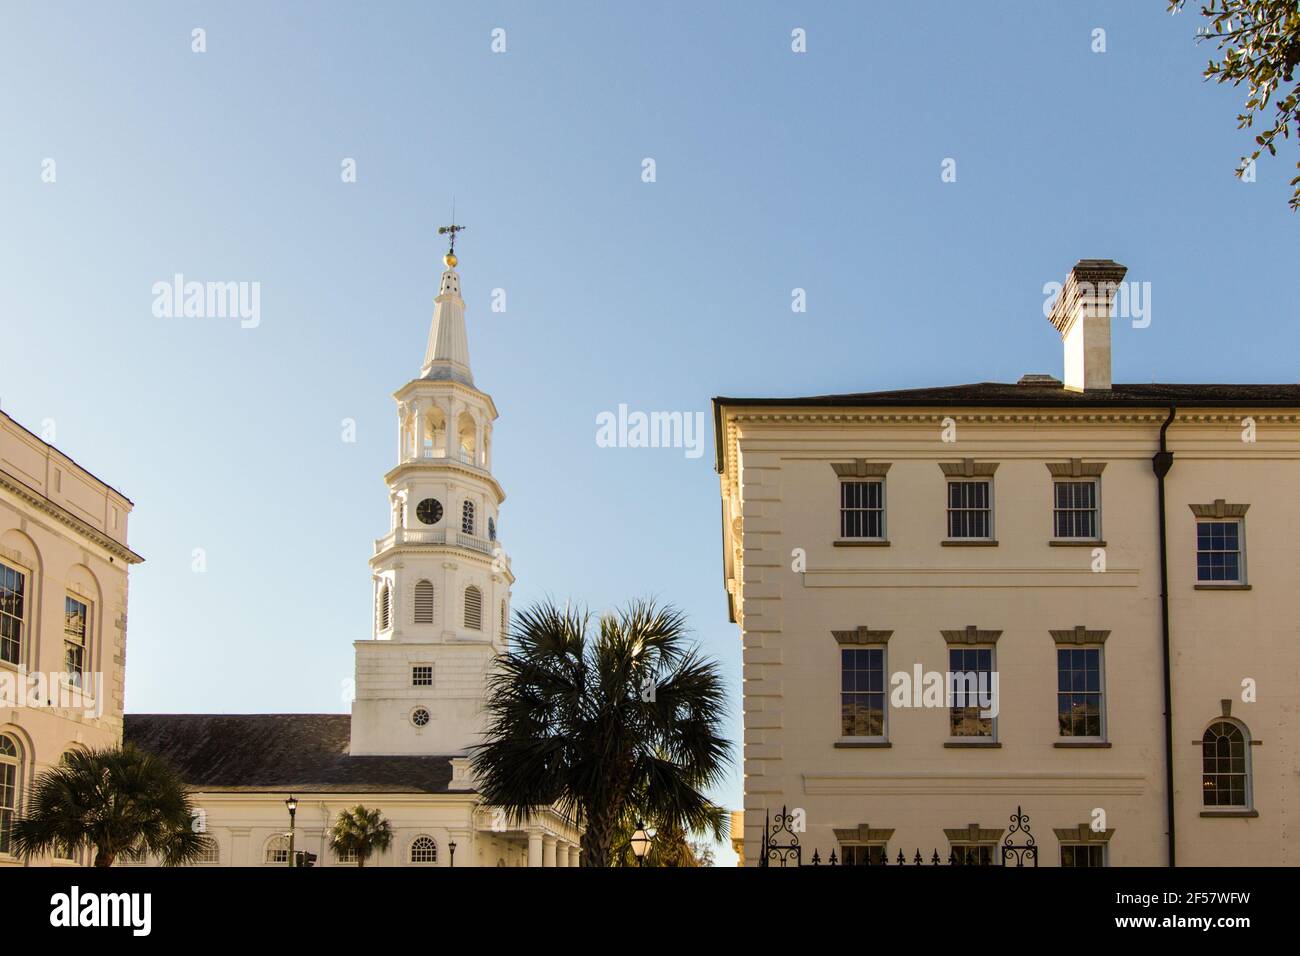 Die berühmten vier Ecken des Gesetzes in Charleston. Die Kreuzung besteht aus einer Kirche, einem Bundesgebäude, einem Bezirksgebäude und einem Stadtgebäude. Stockfoto